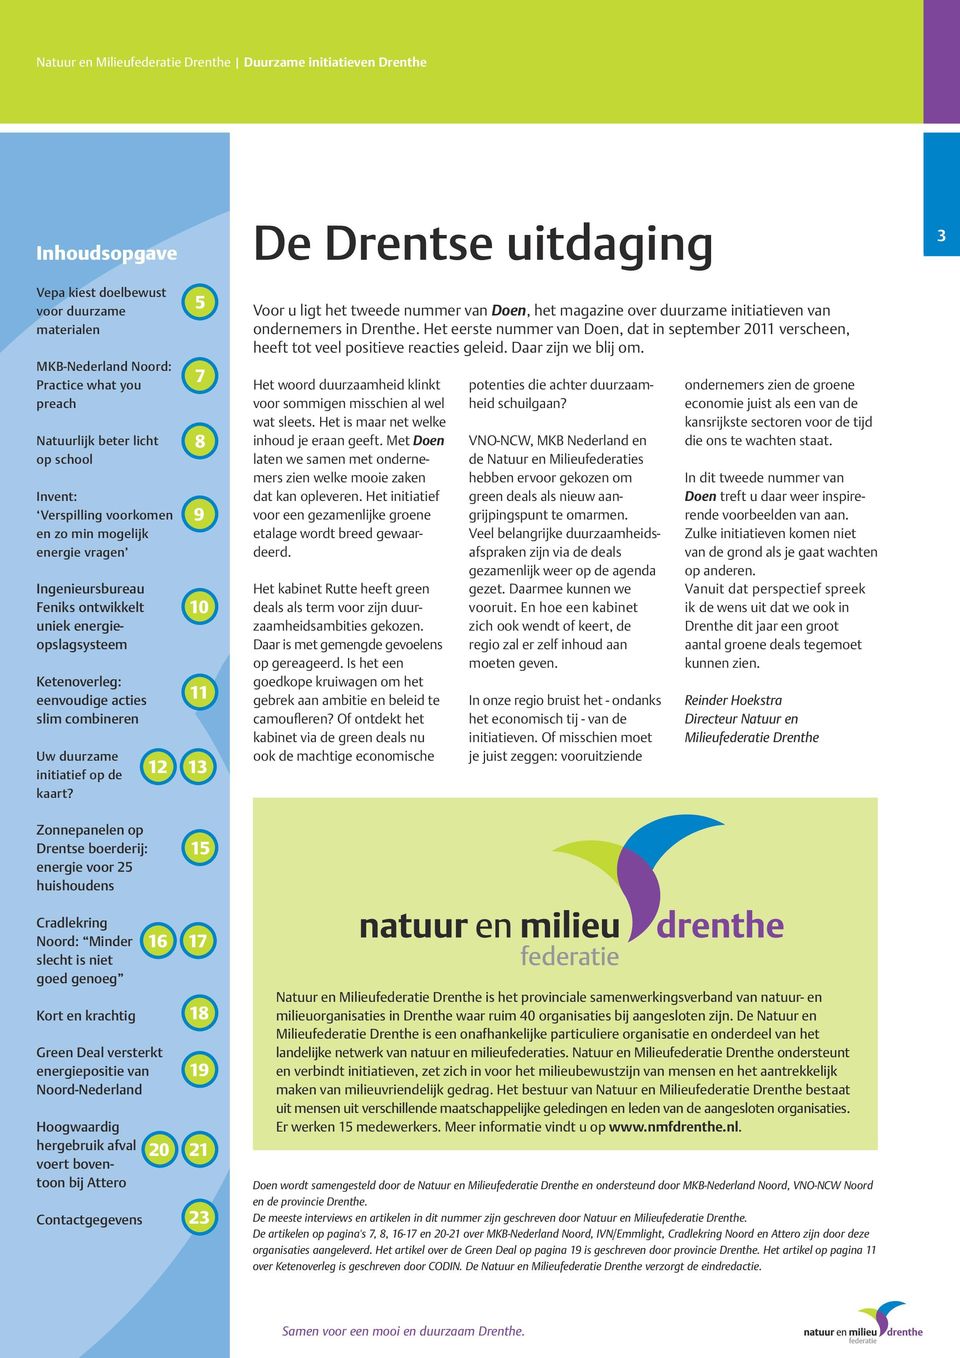 12 5 7 8 9 10 11 13 Voor u ligt het tweede nummer van Doen, het magazine over duurzame initiatieven van ondernemers in Drenthe.